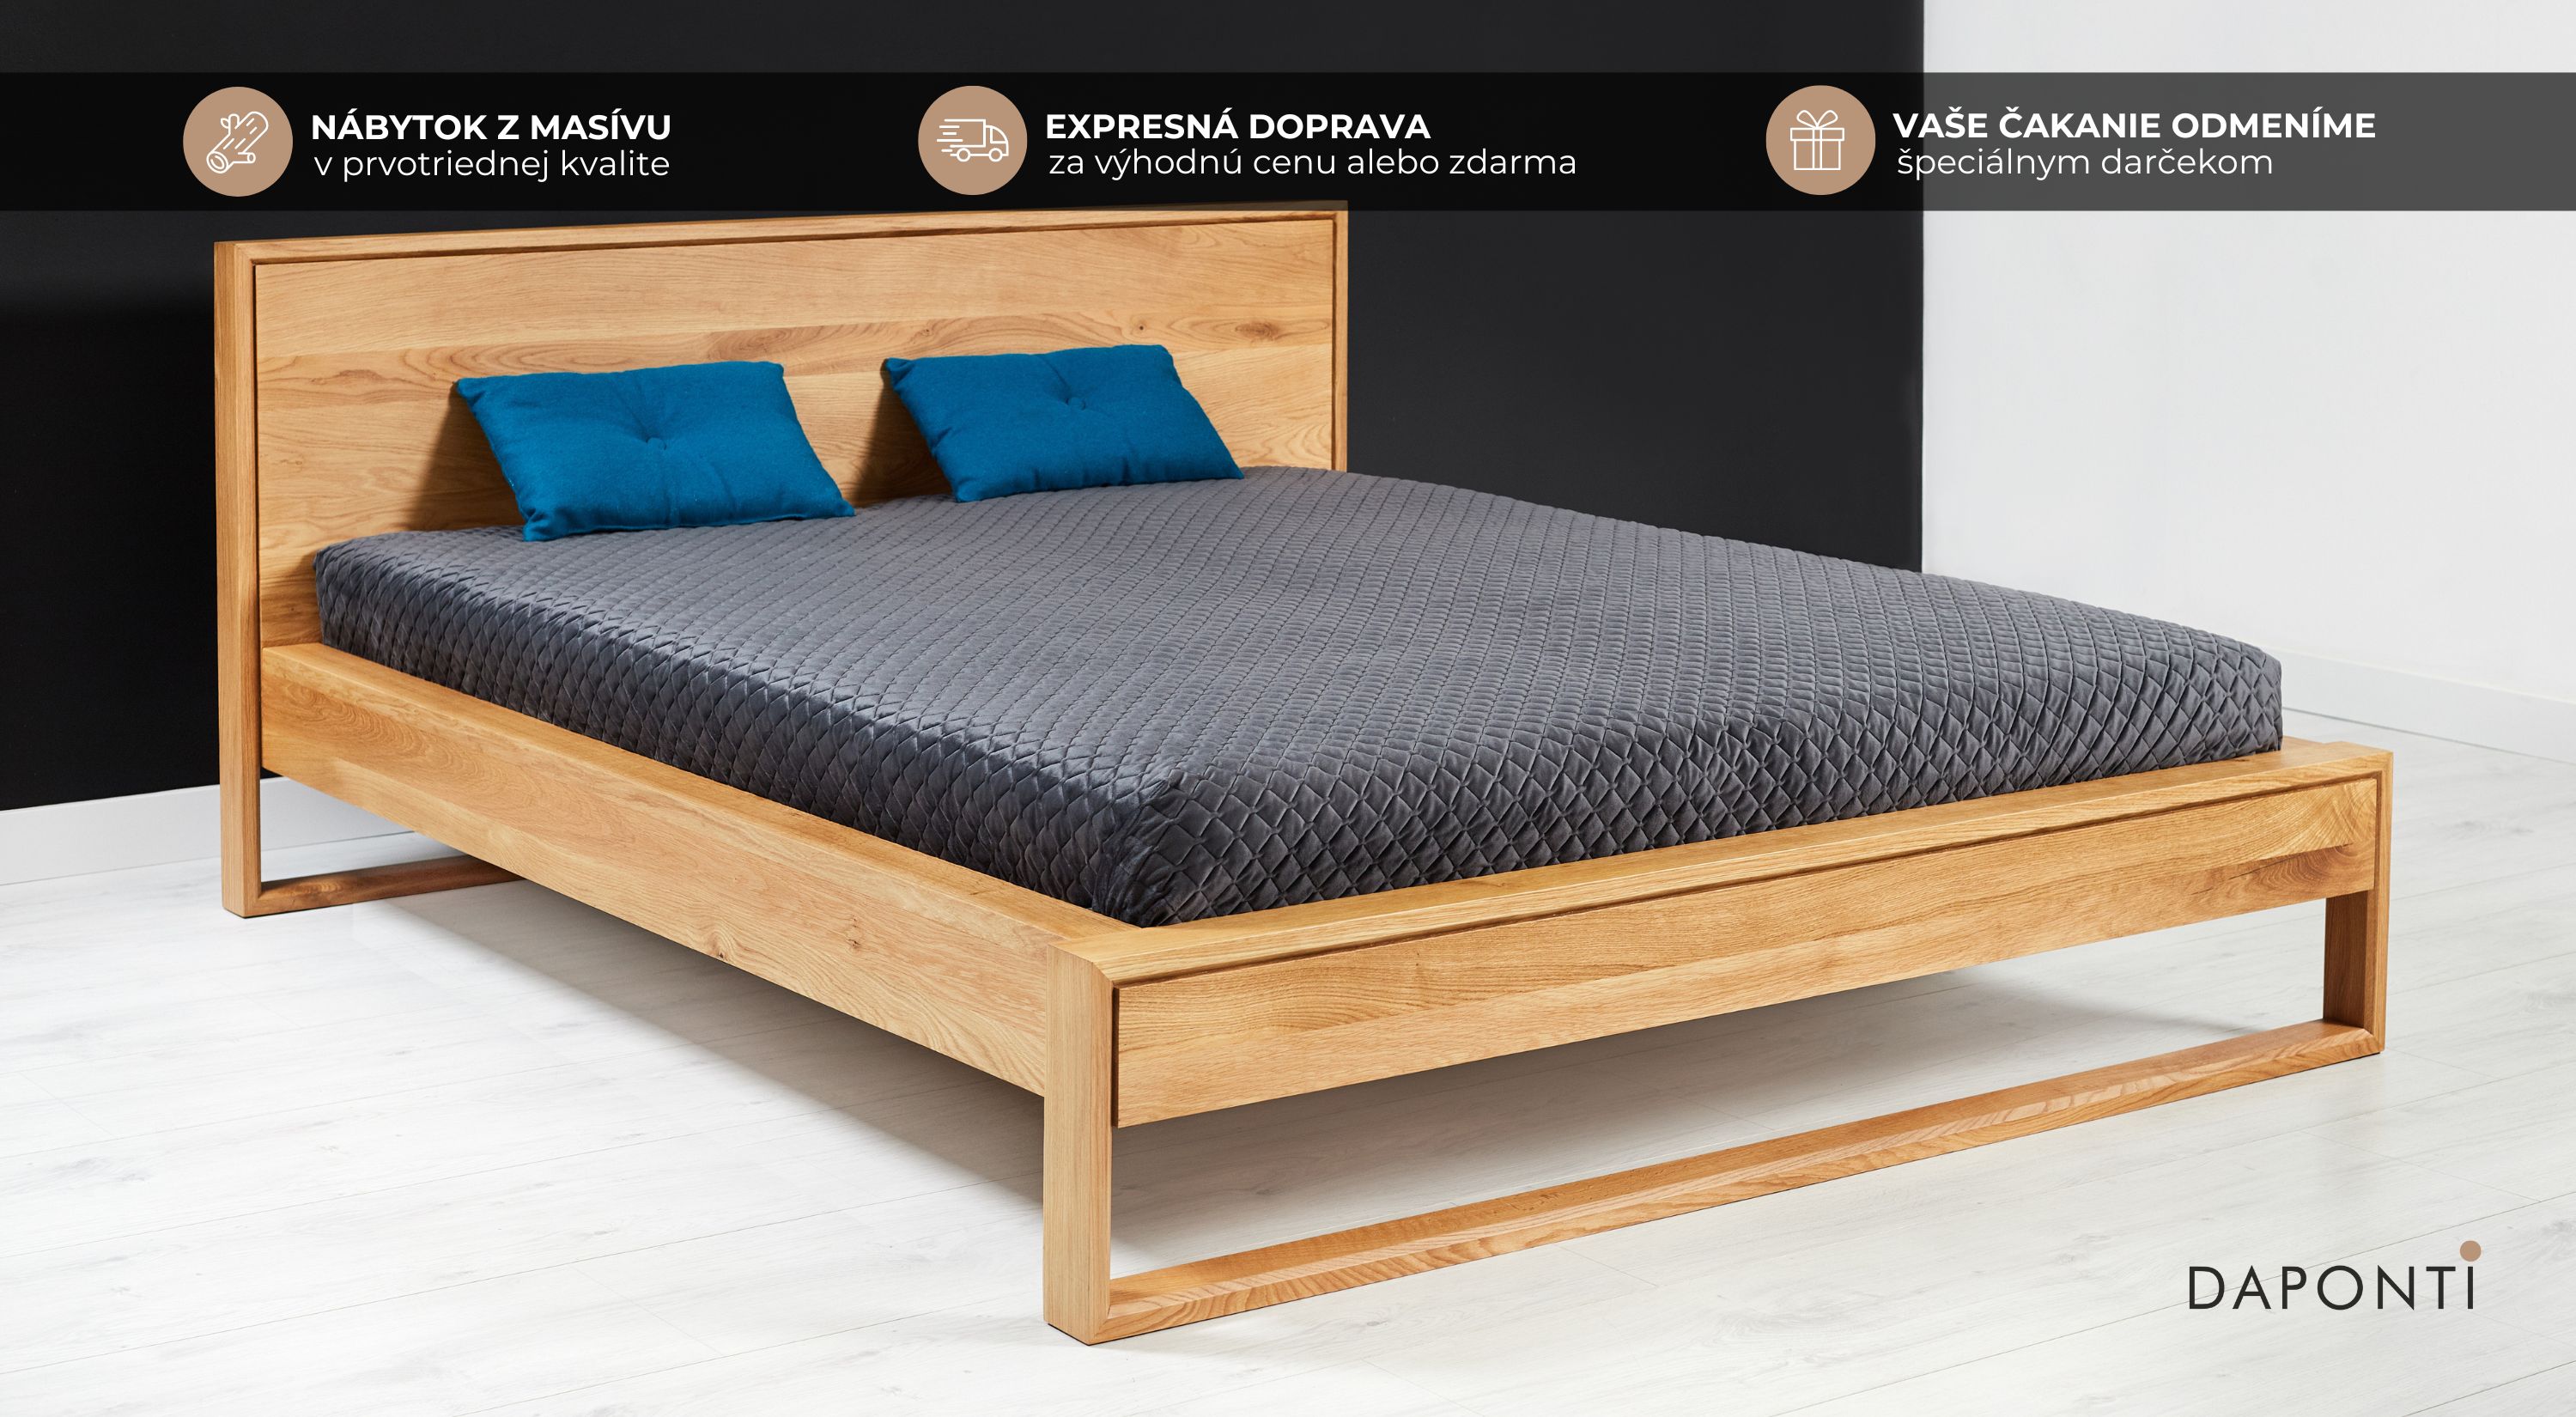 Buková manželská posteľ z masívneho dreva s geometricky členenými nohami v priestore minimalistickej spálne.